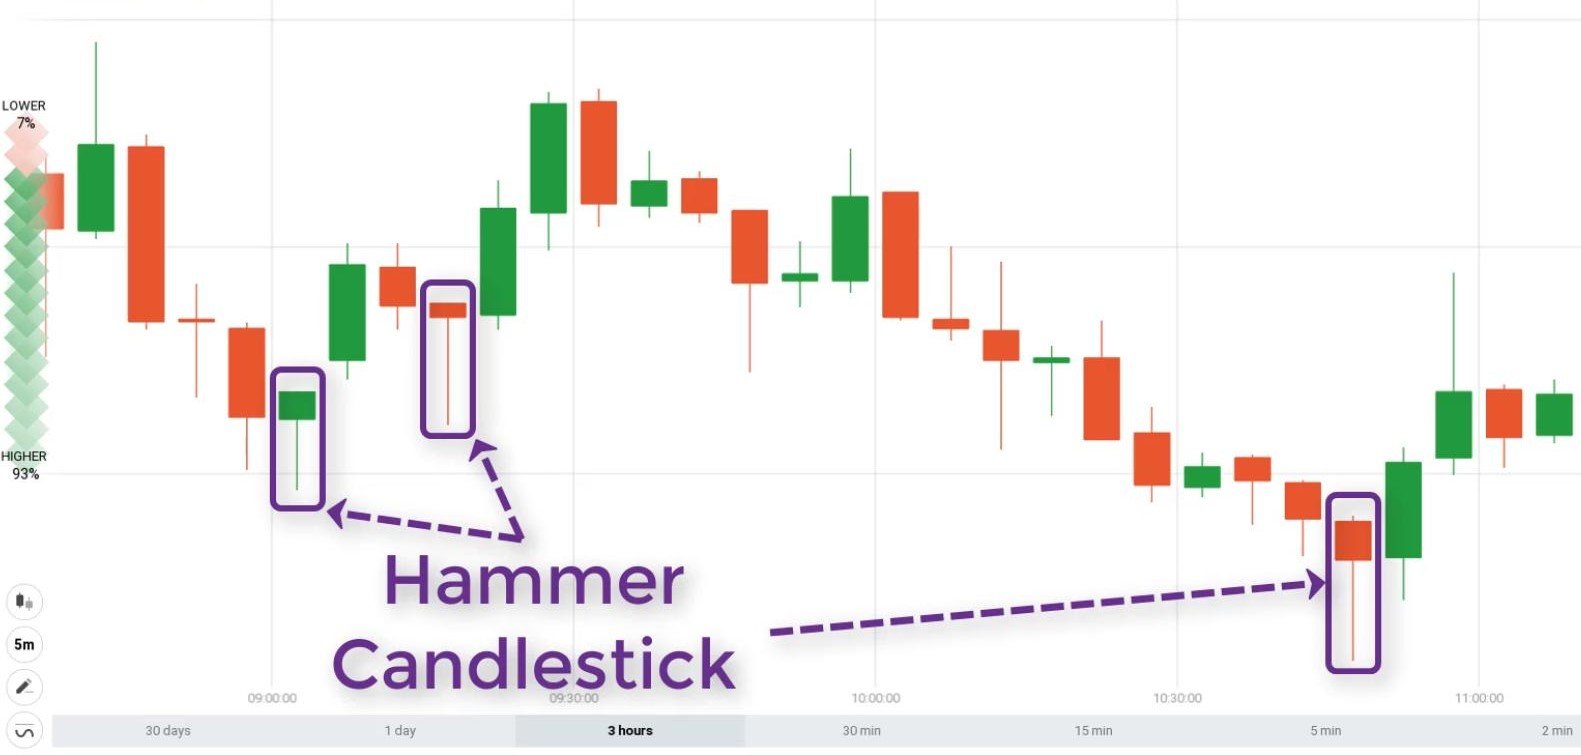 Hammer Candlestick